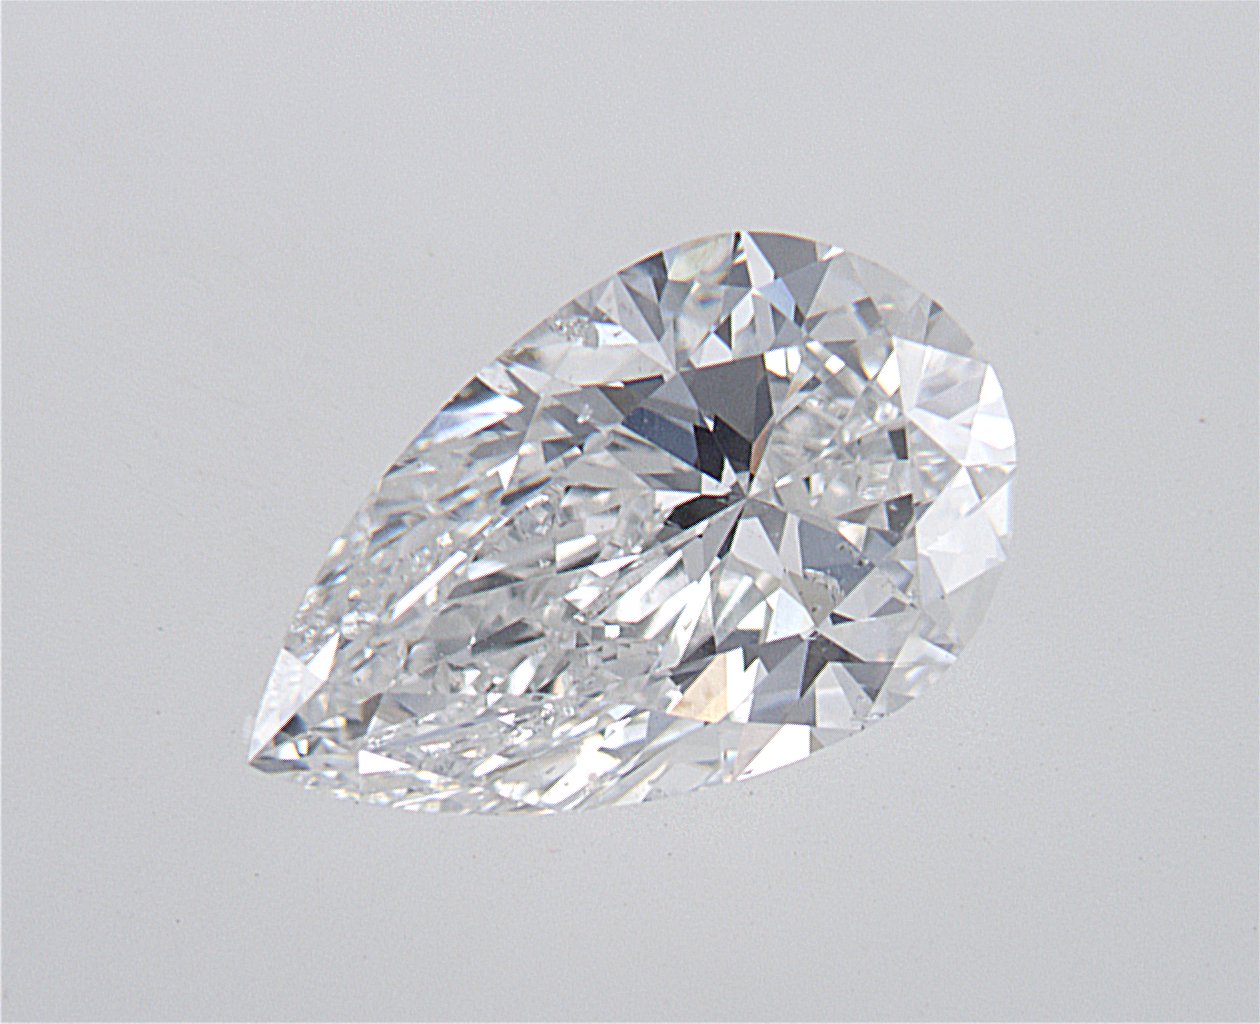 1.5 Carat Pear Cut Natural Diamond